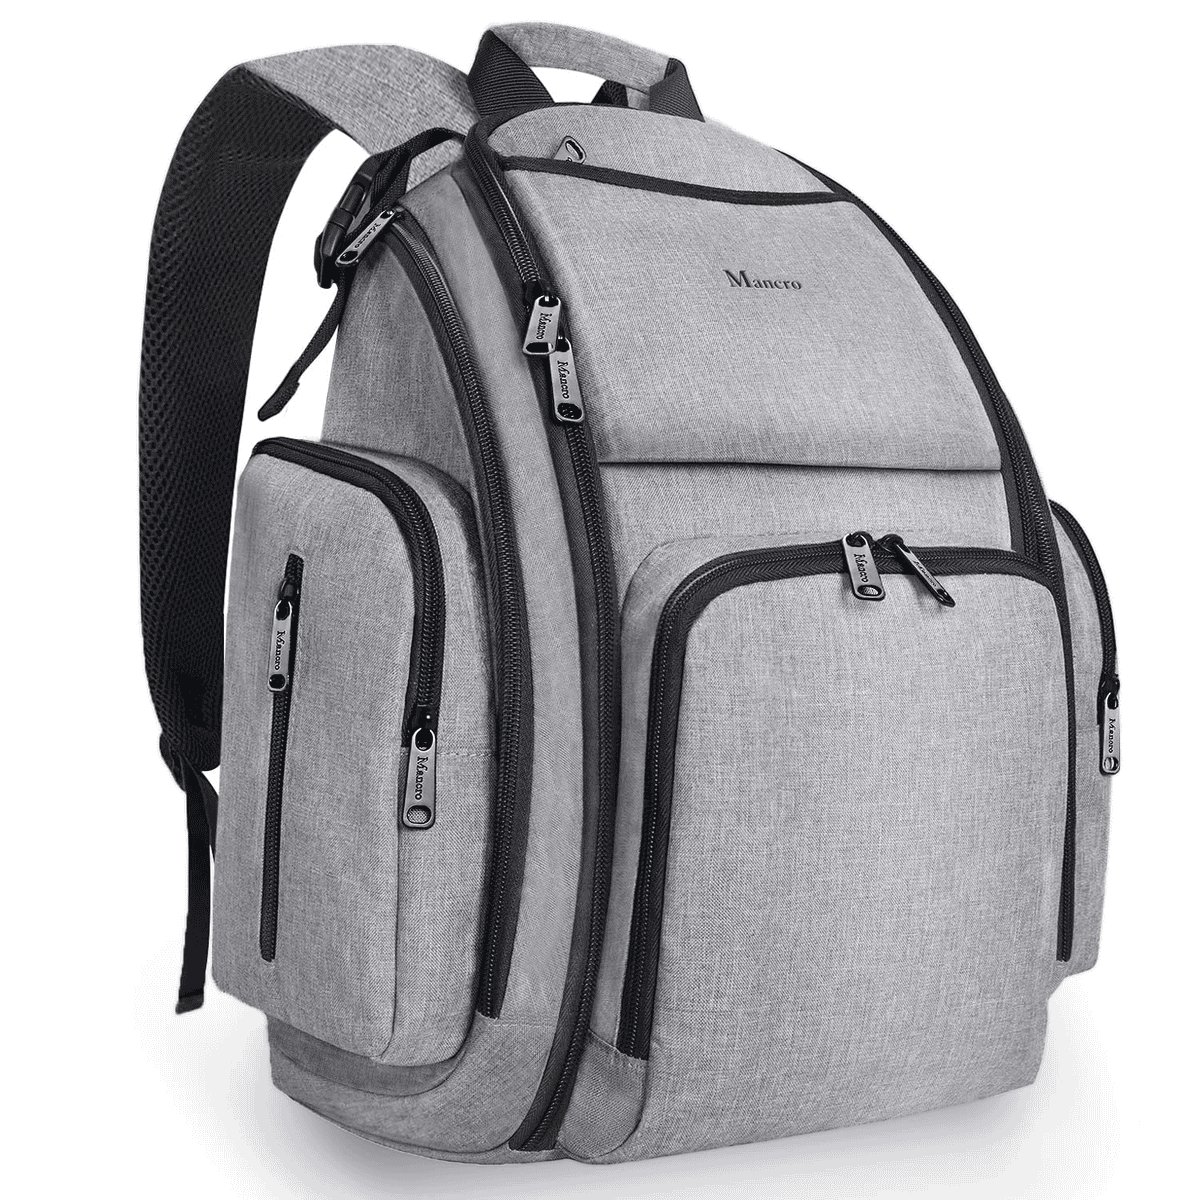 gray Mancro diaper bag backpack 